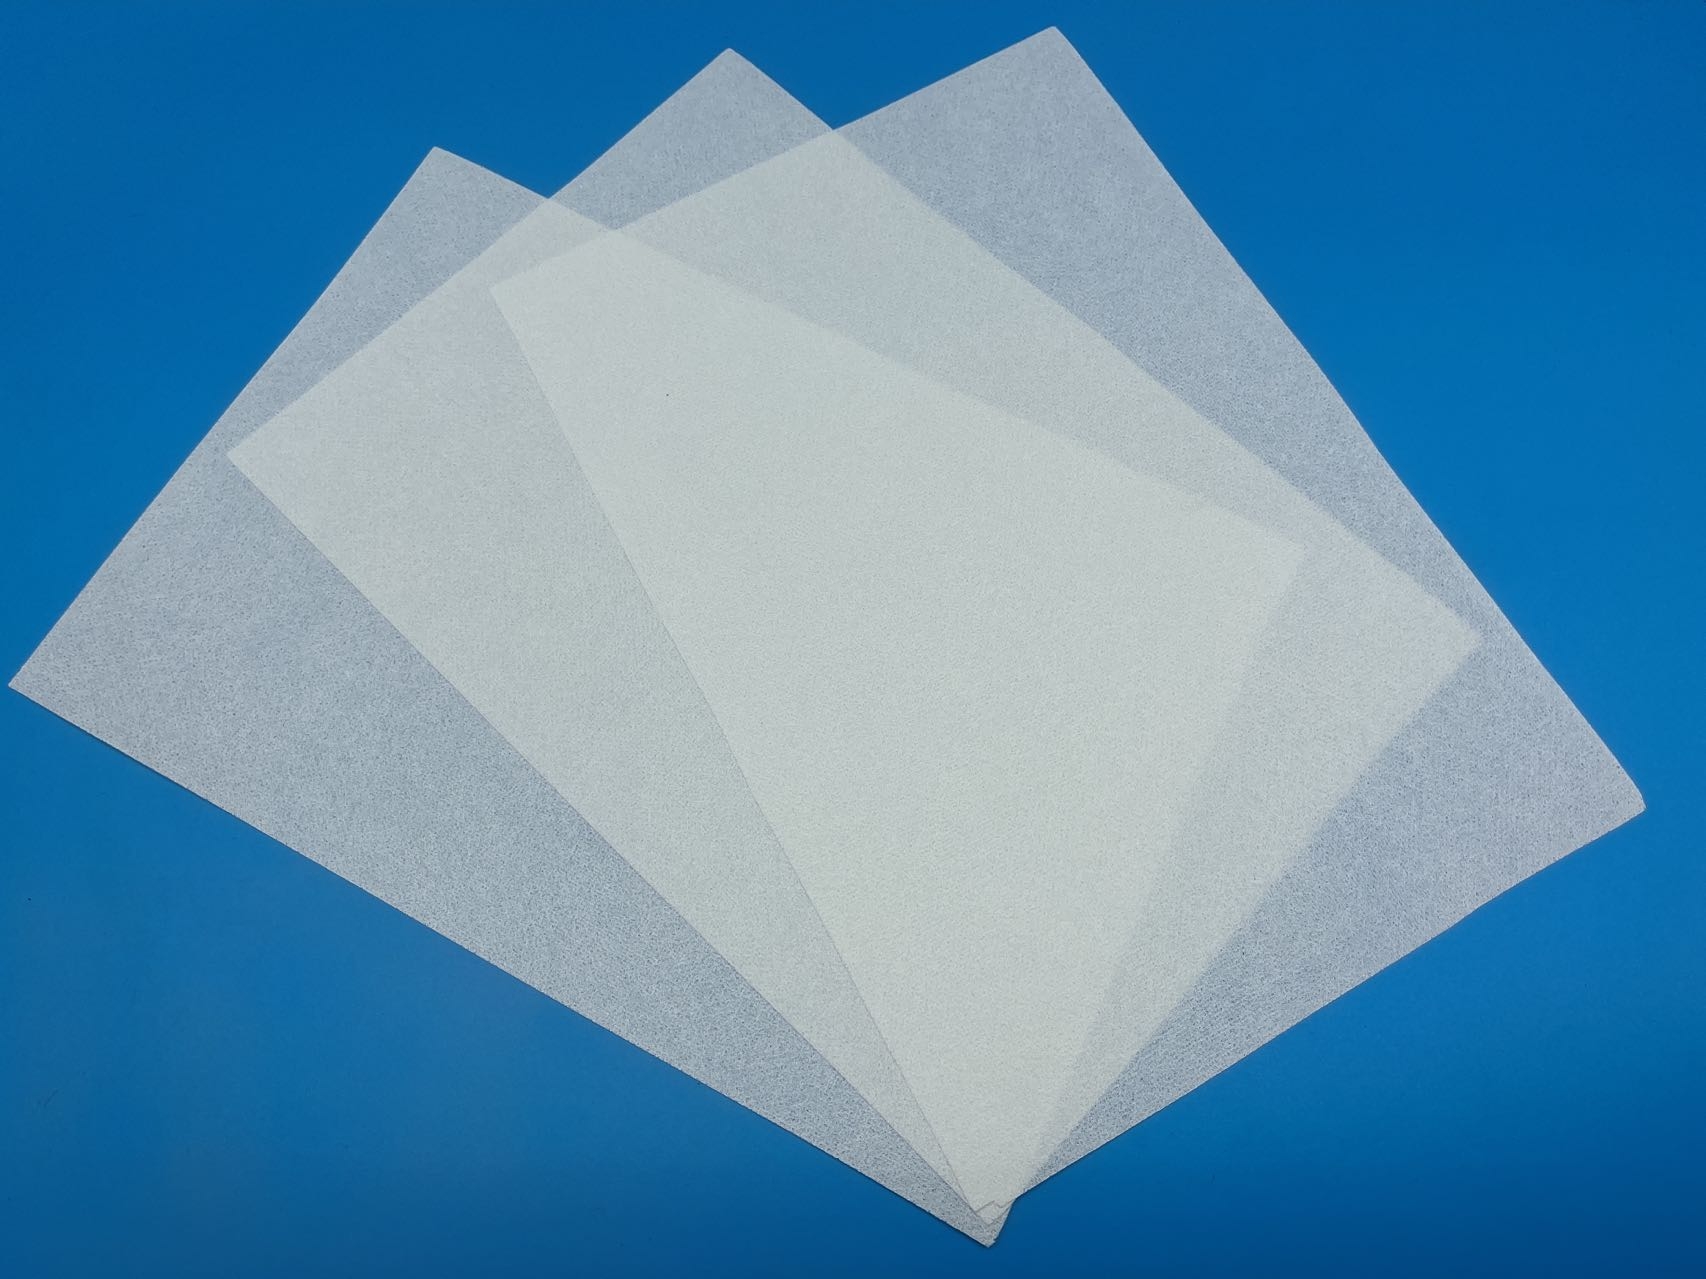 Wall Board Facing Tissue of Fiberglass/ Polyester Fiberglass Mat As Construction Materials